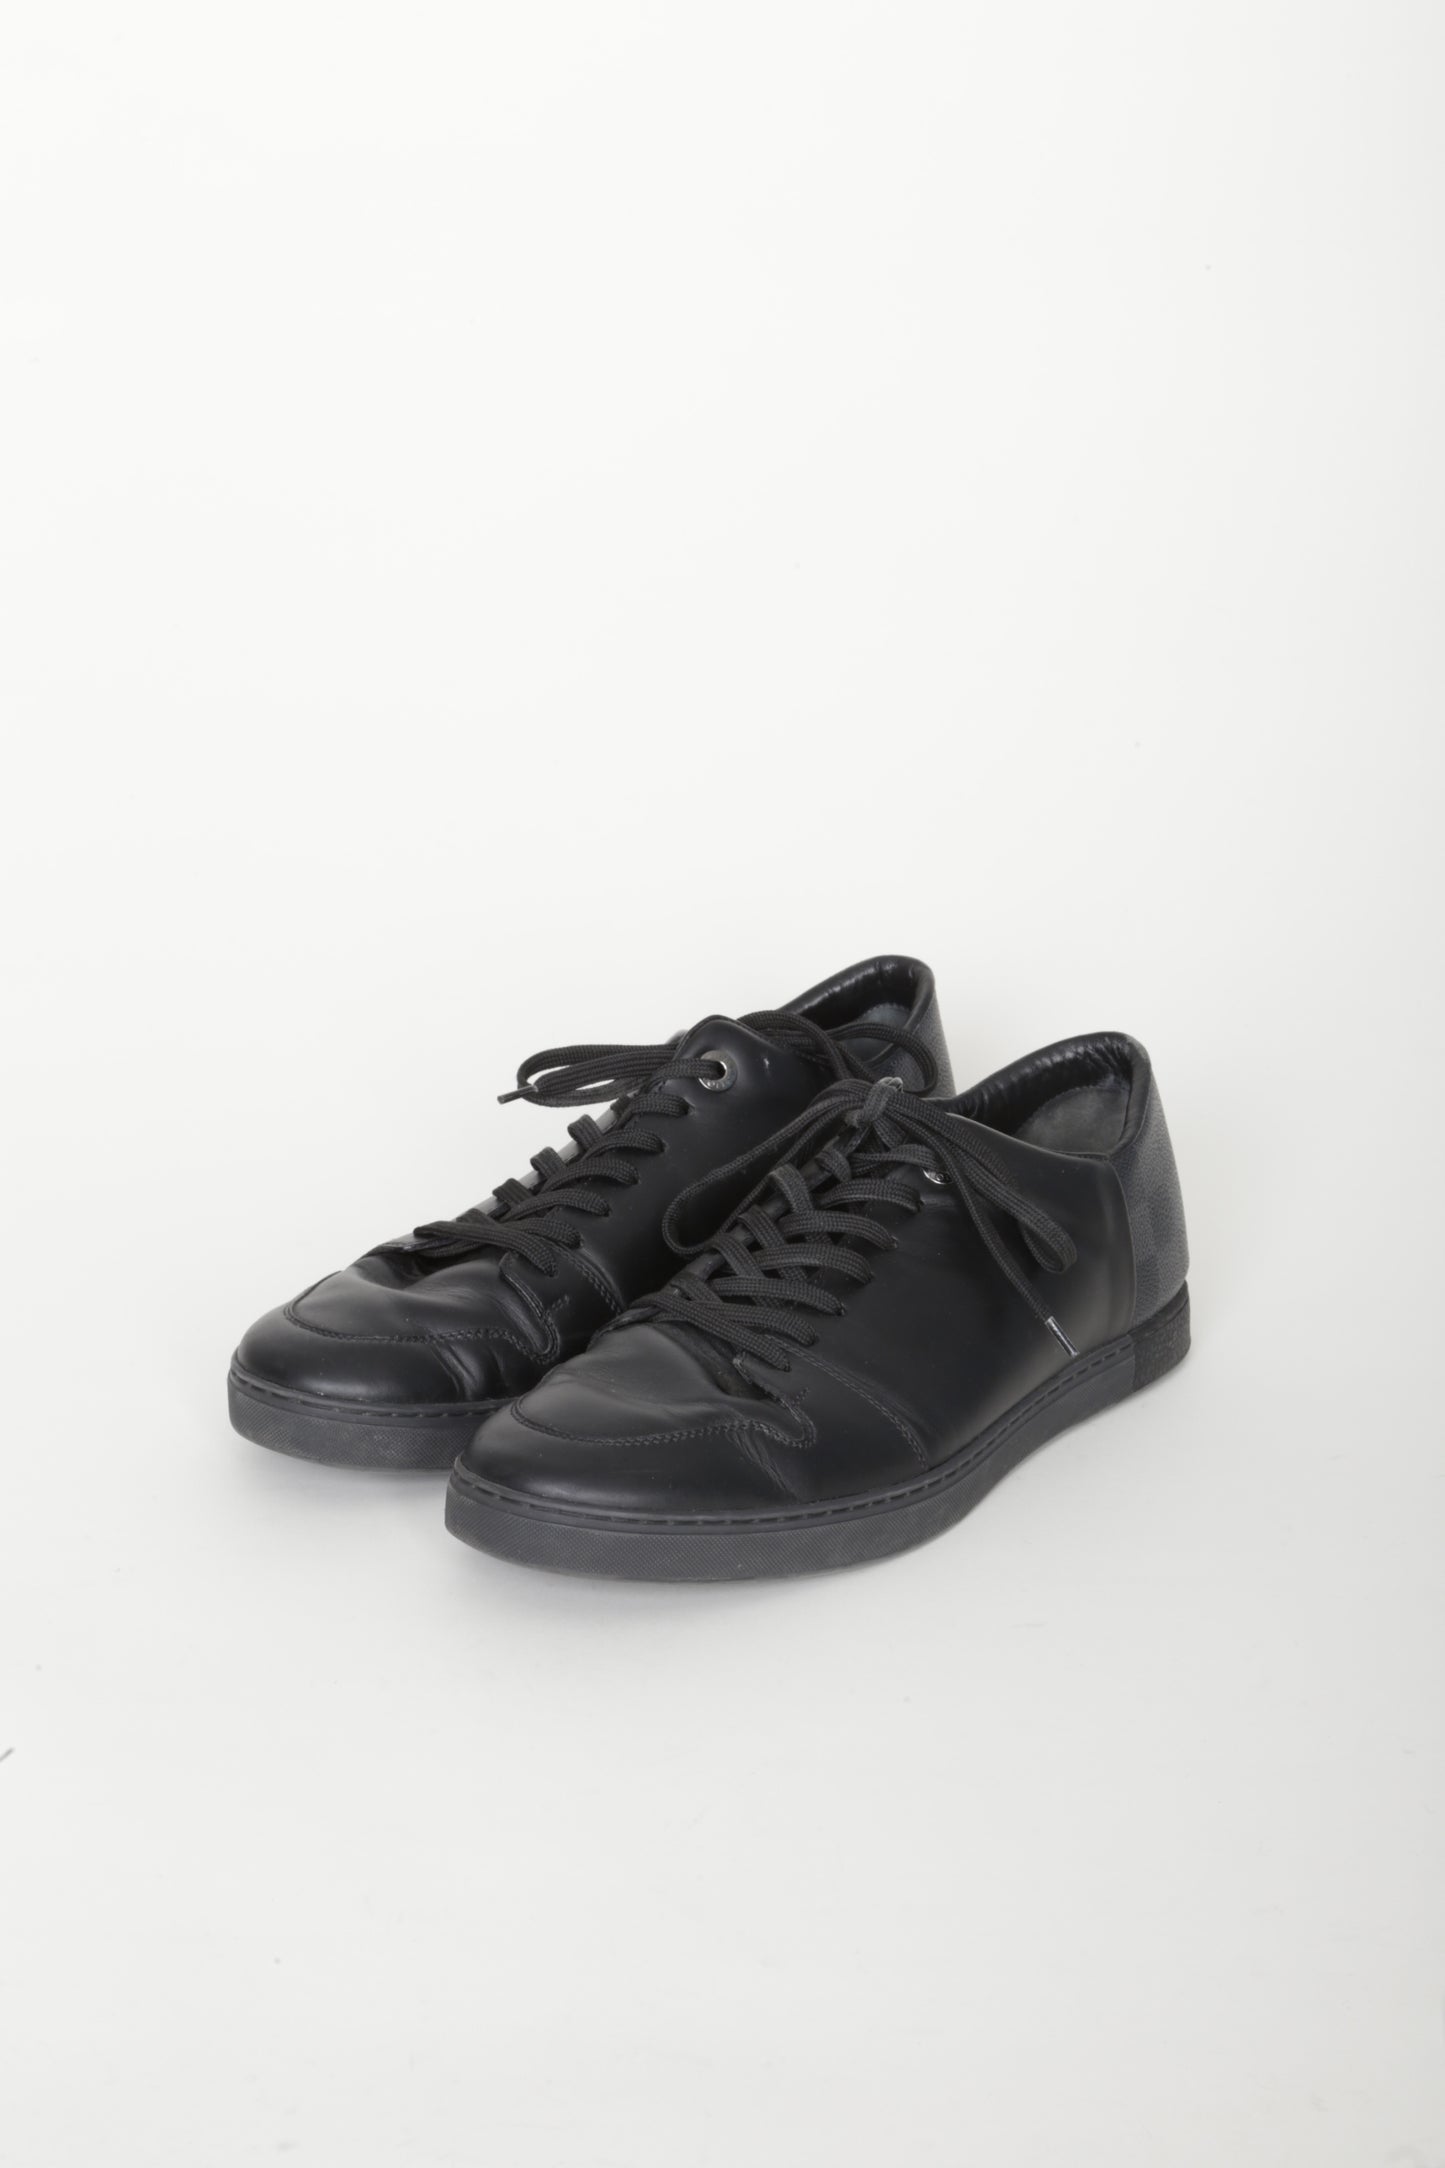 Louis Vuitton Mens Black Shoes Size 7